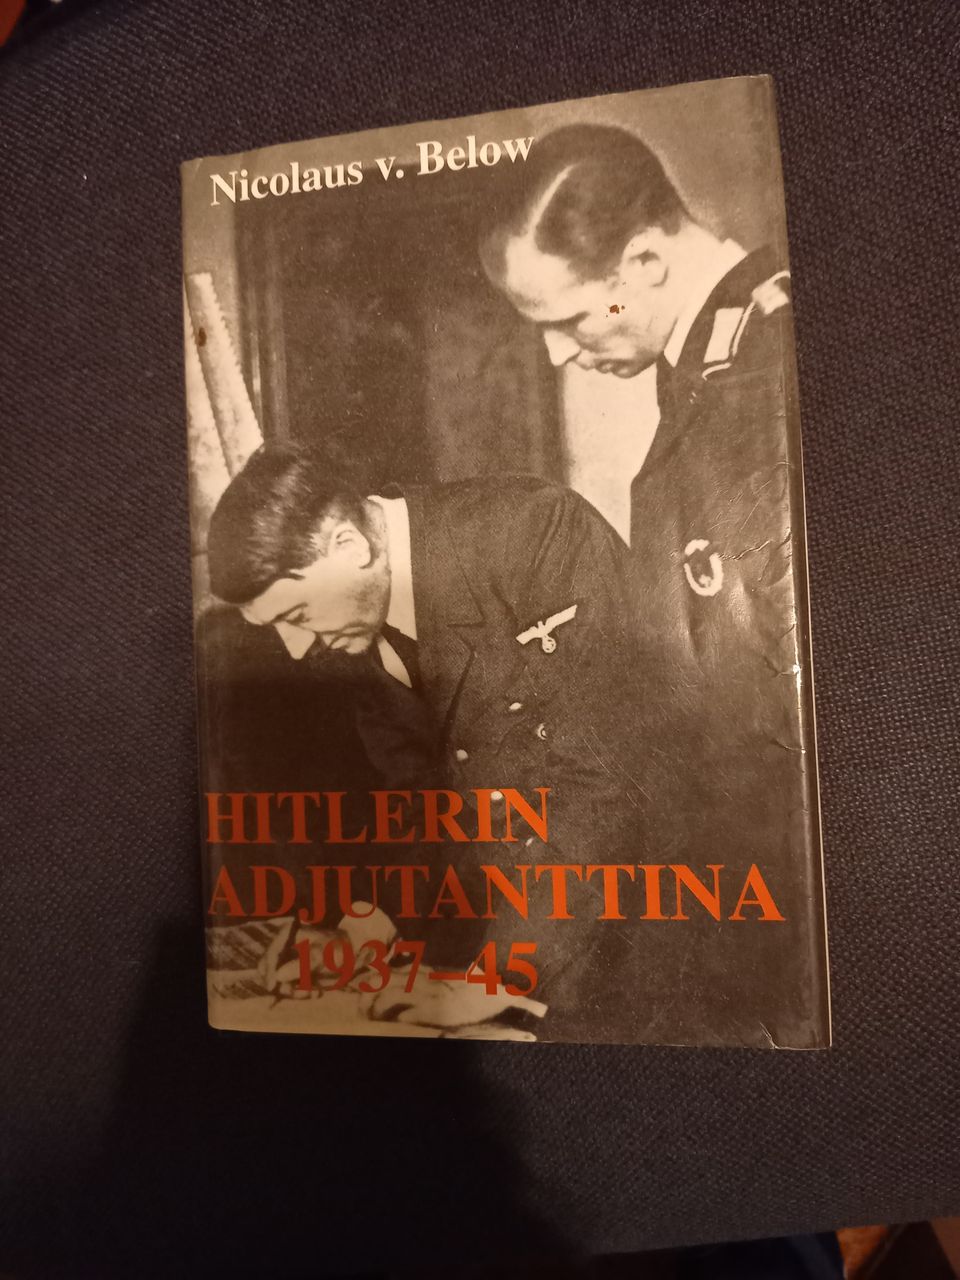 Nicolaus von Below: Hitlerin adjutanttina 1937-1945